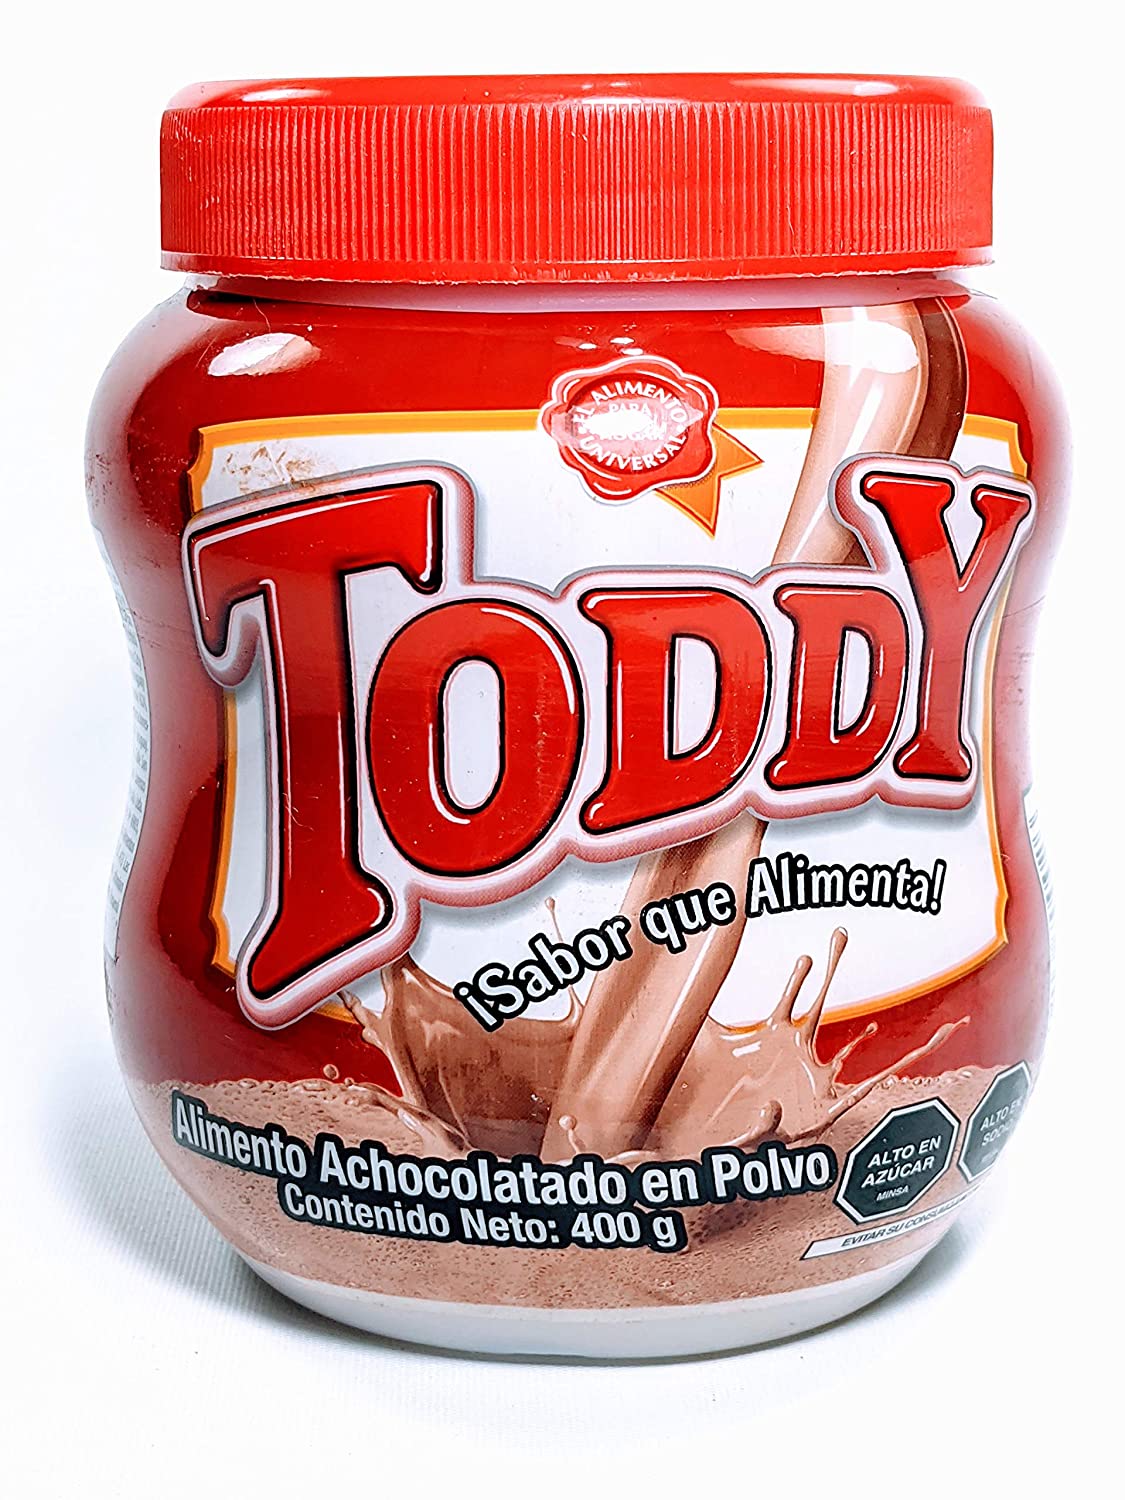 Toddy Alimento Achocolatado Fortificado (Pack of 2) - image 1 of 4